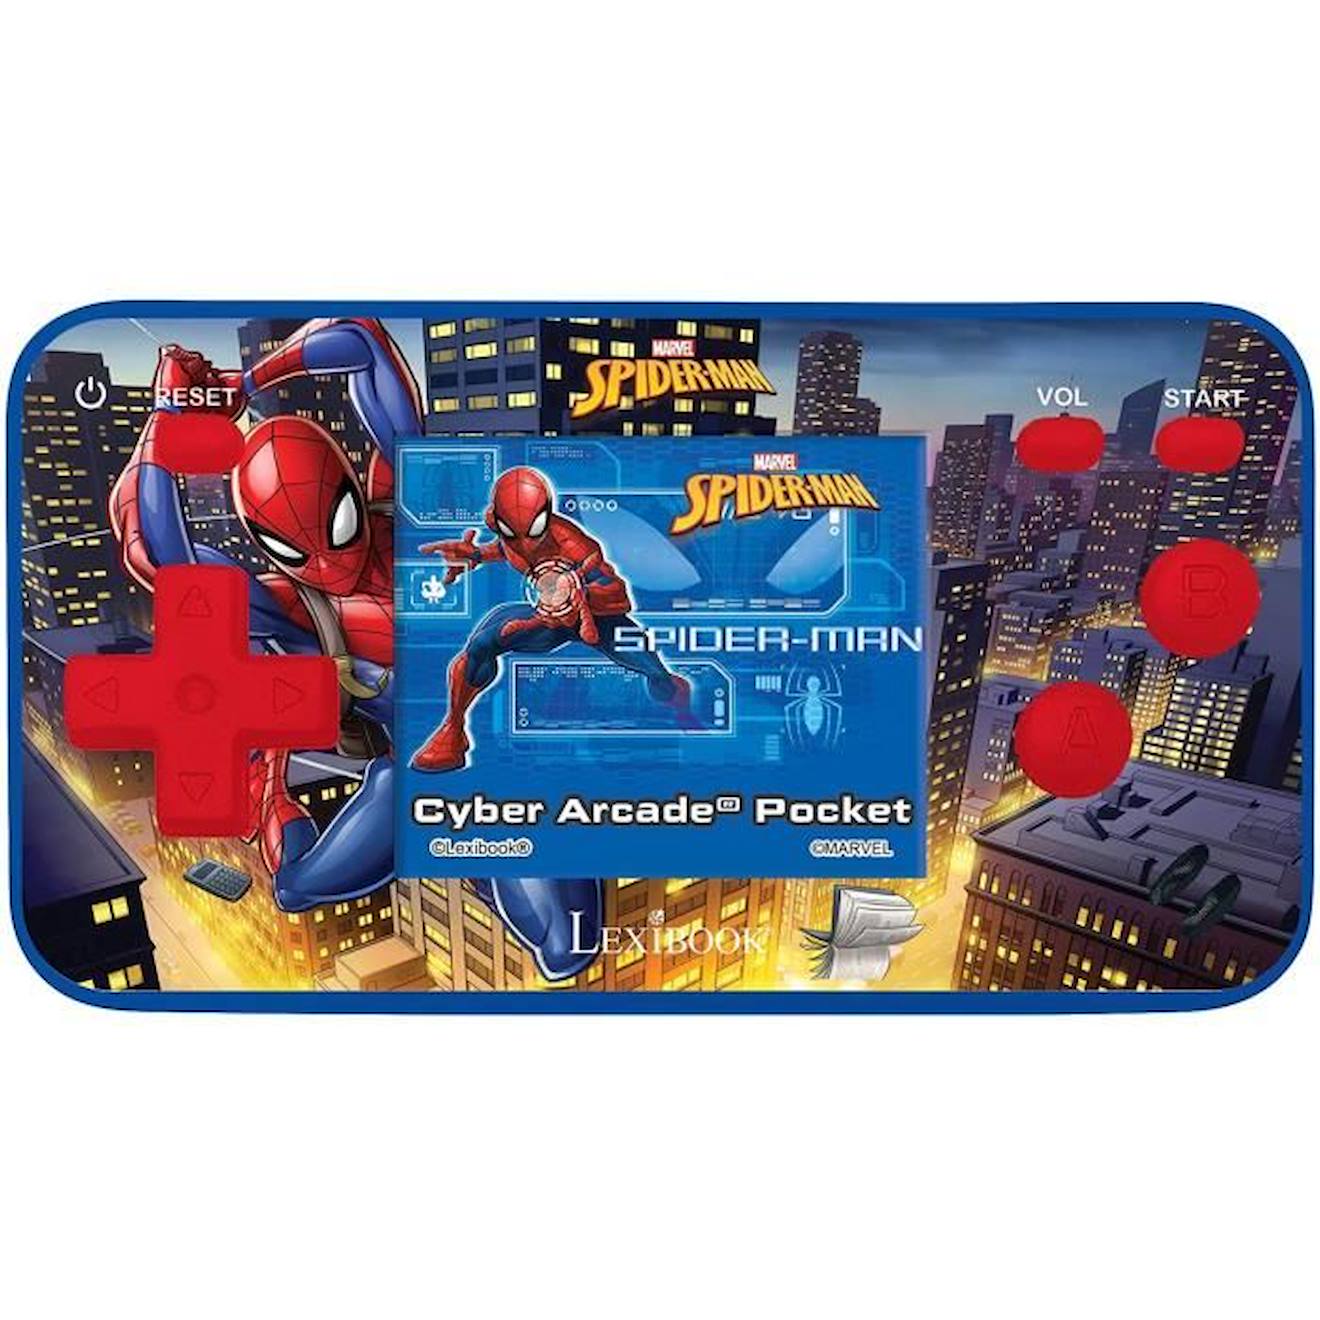 Console Portable Cyber Arcade® Pocket Spider-man – Écran 1.8 150 Jeux Dont 10 Spider-man Bleu